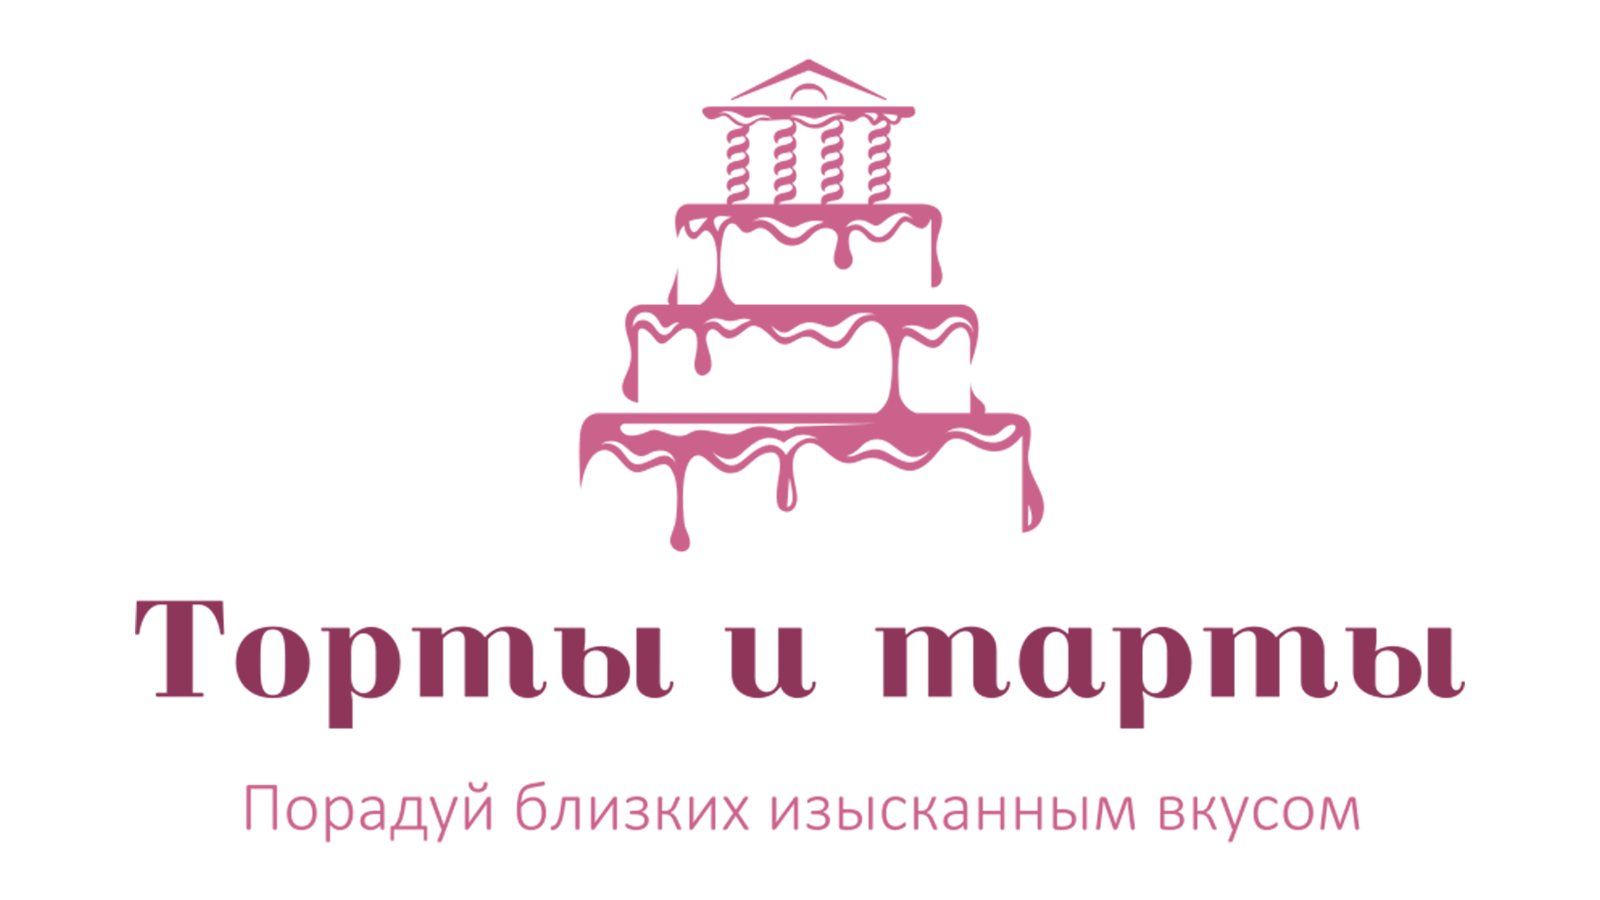 Логотип Торты и тарты